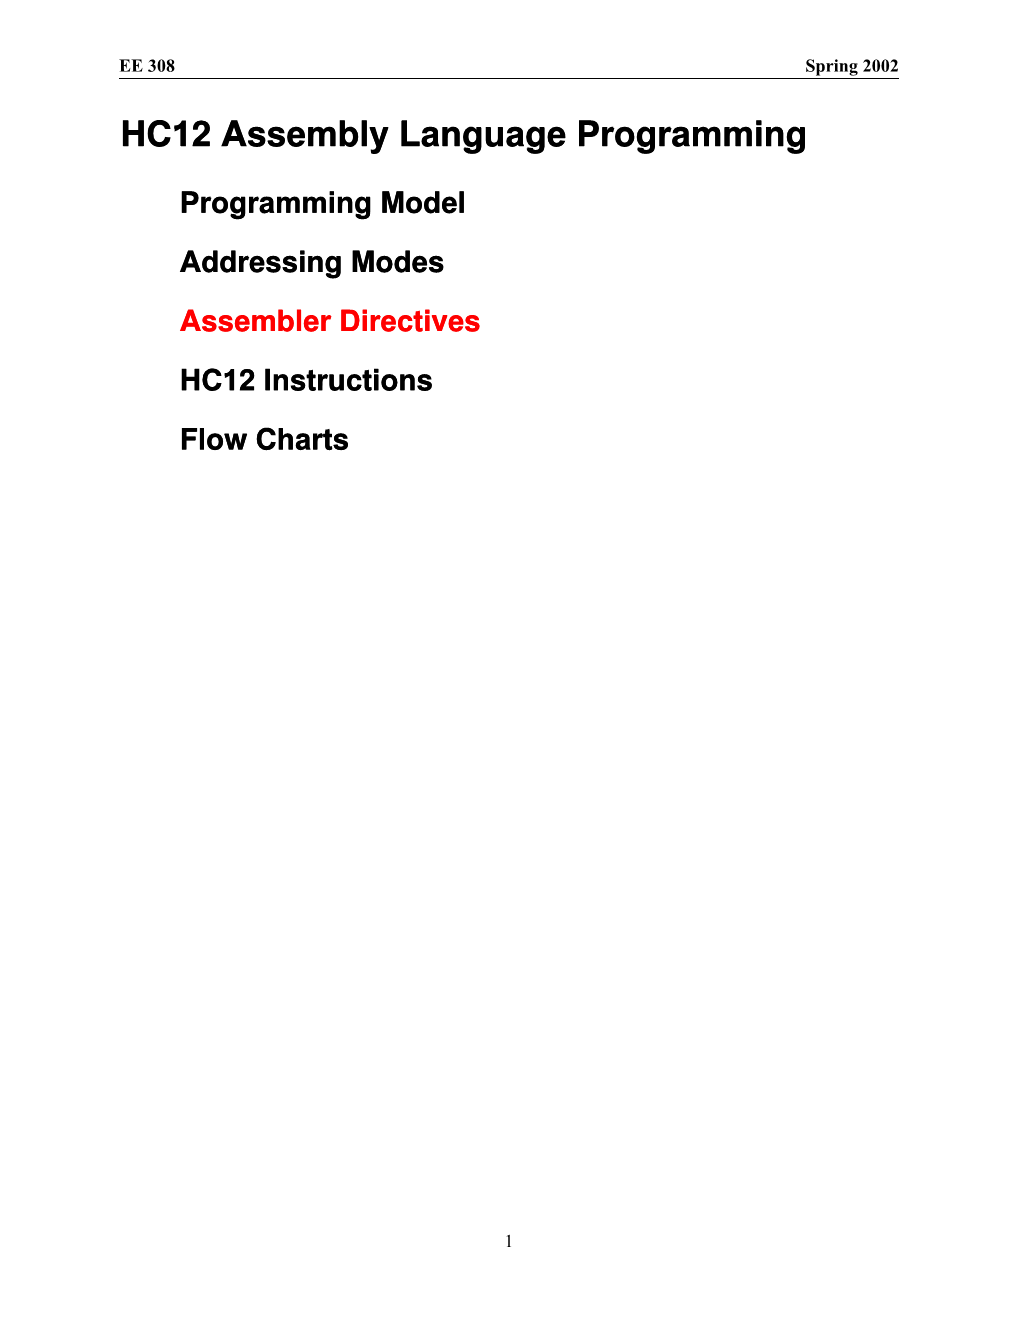 HC12 Assembly Language Programming